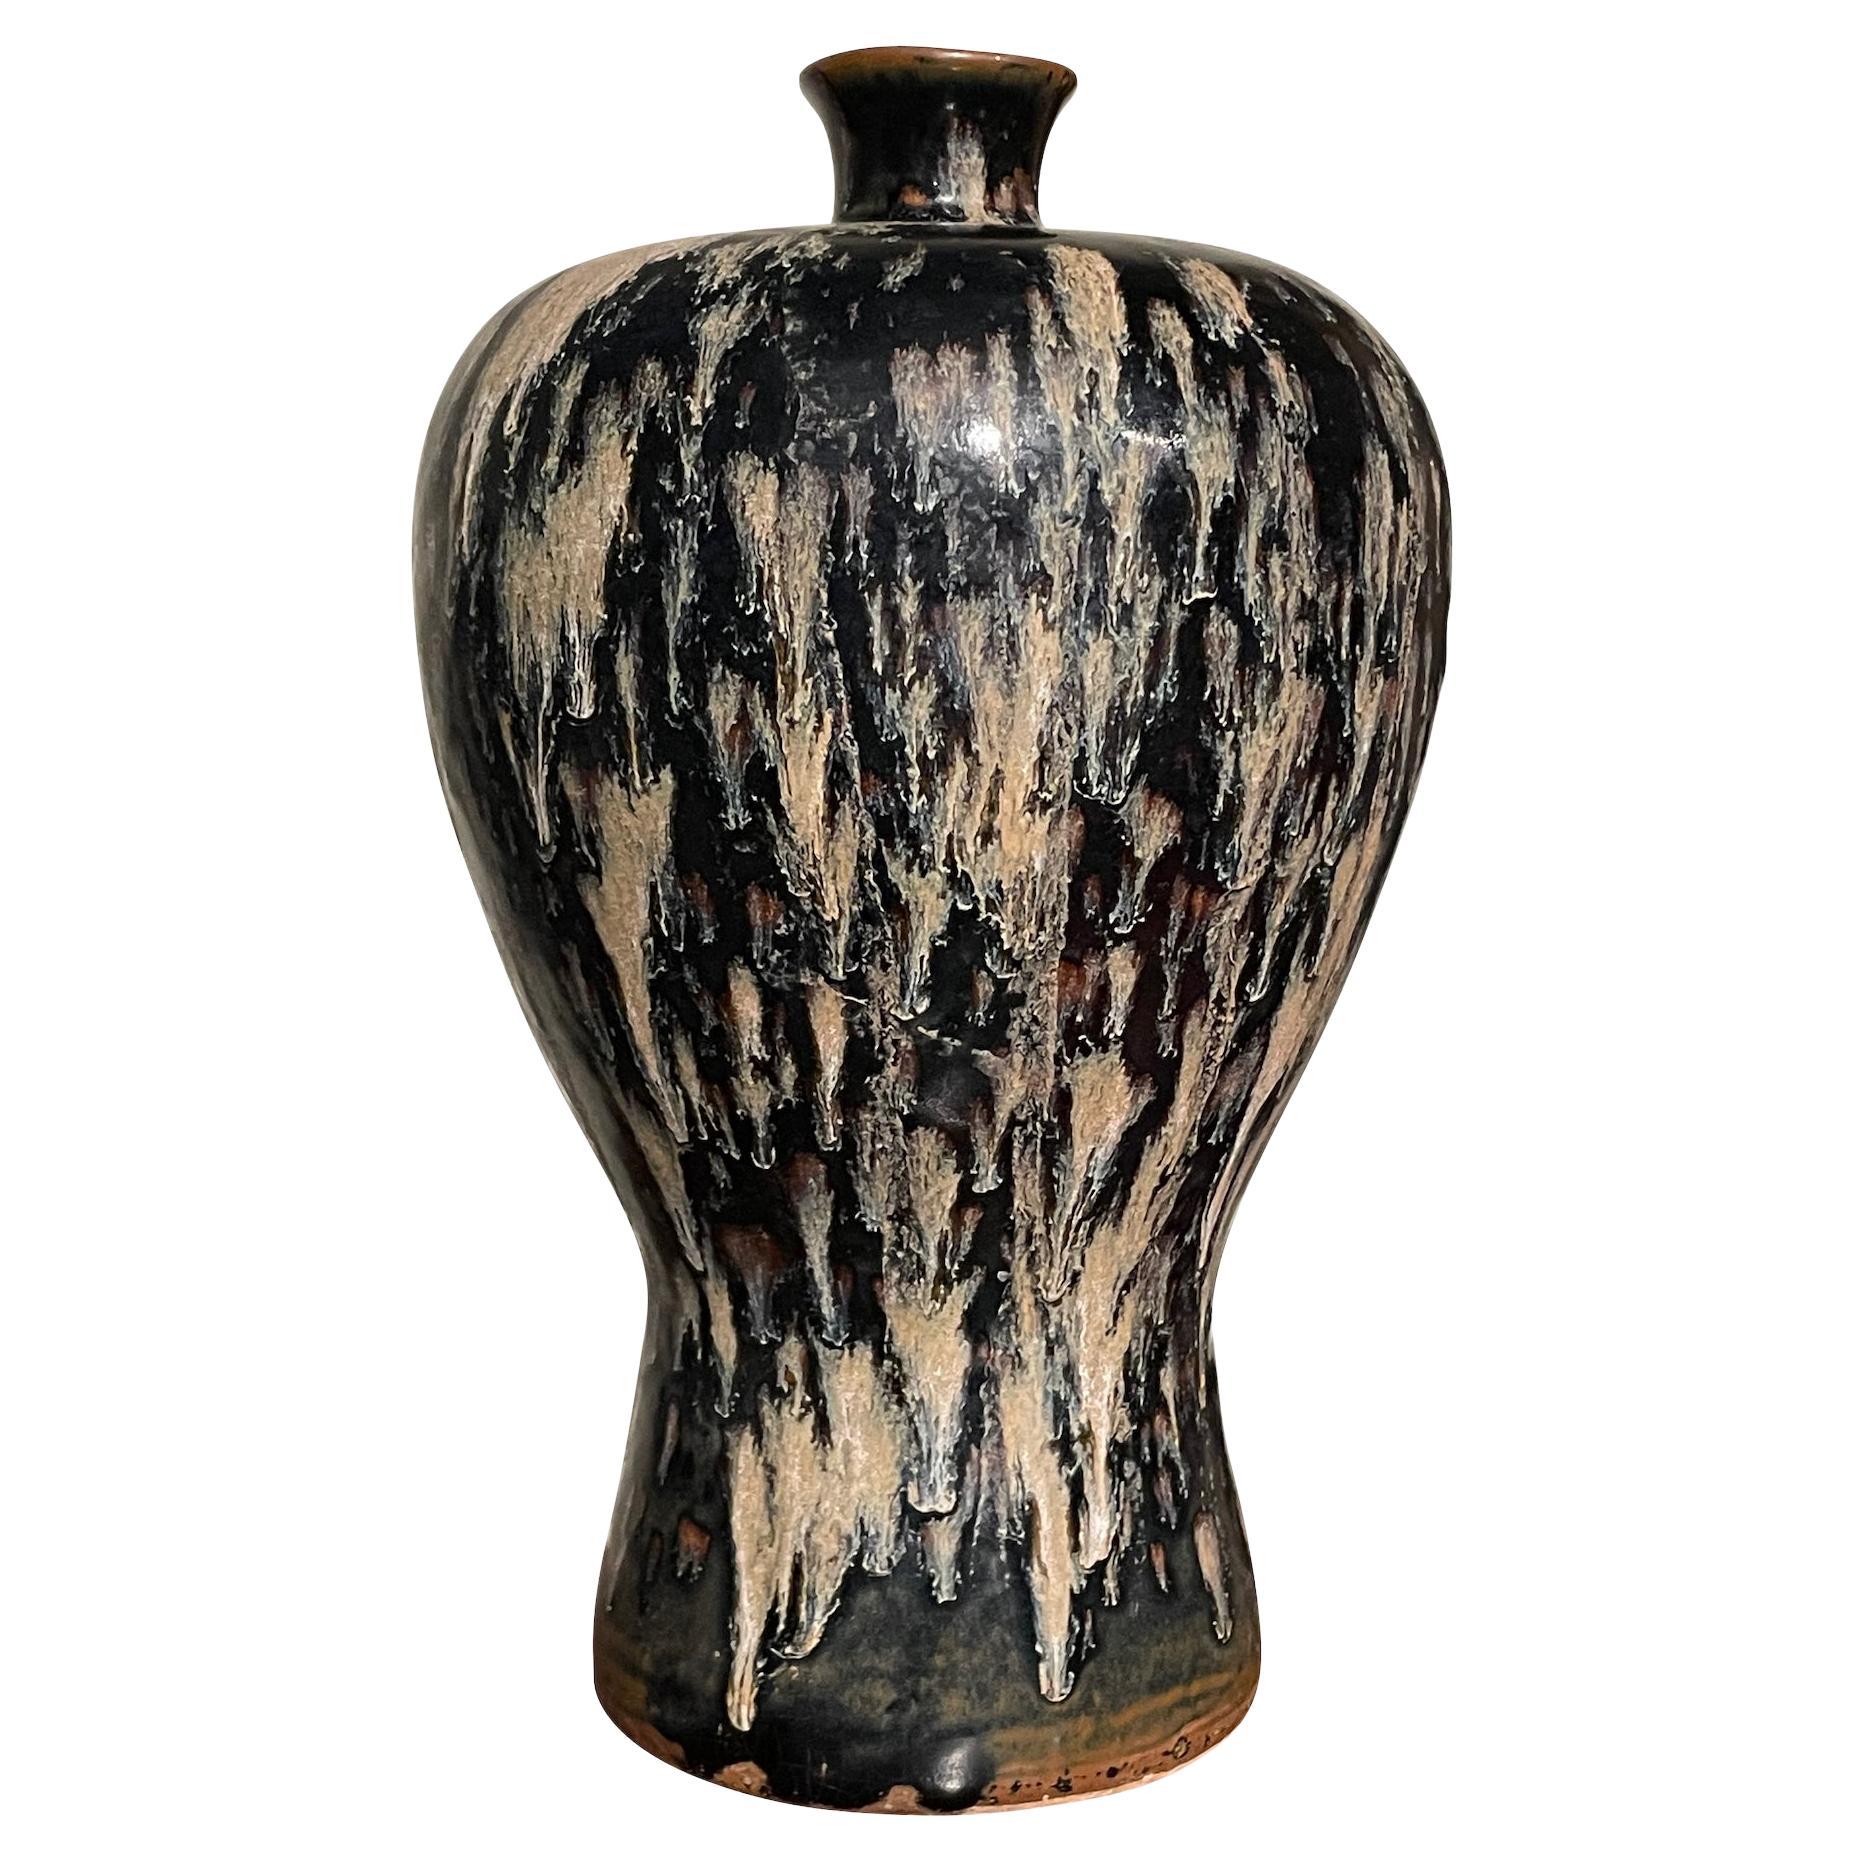 Grand vase en forme d'horloge en verre à glaçure crème et noire, Chine, contemporain